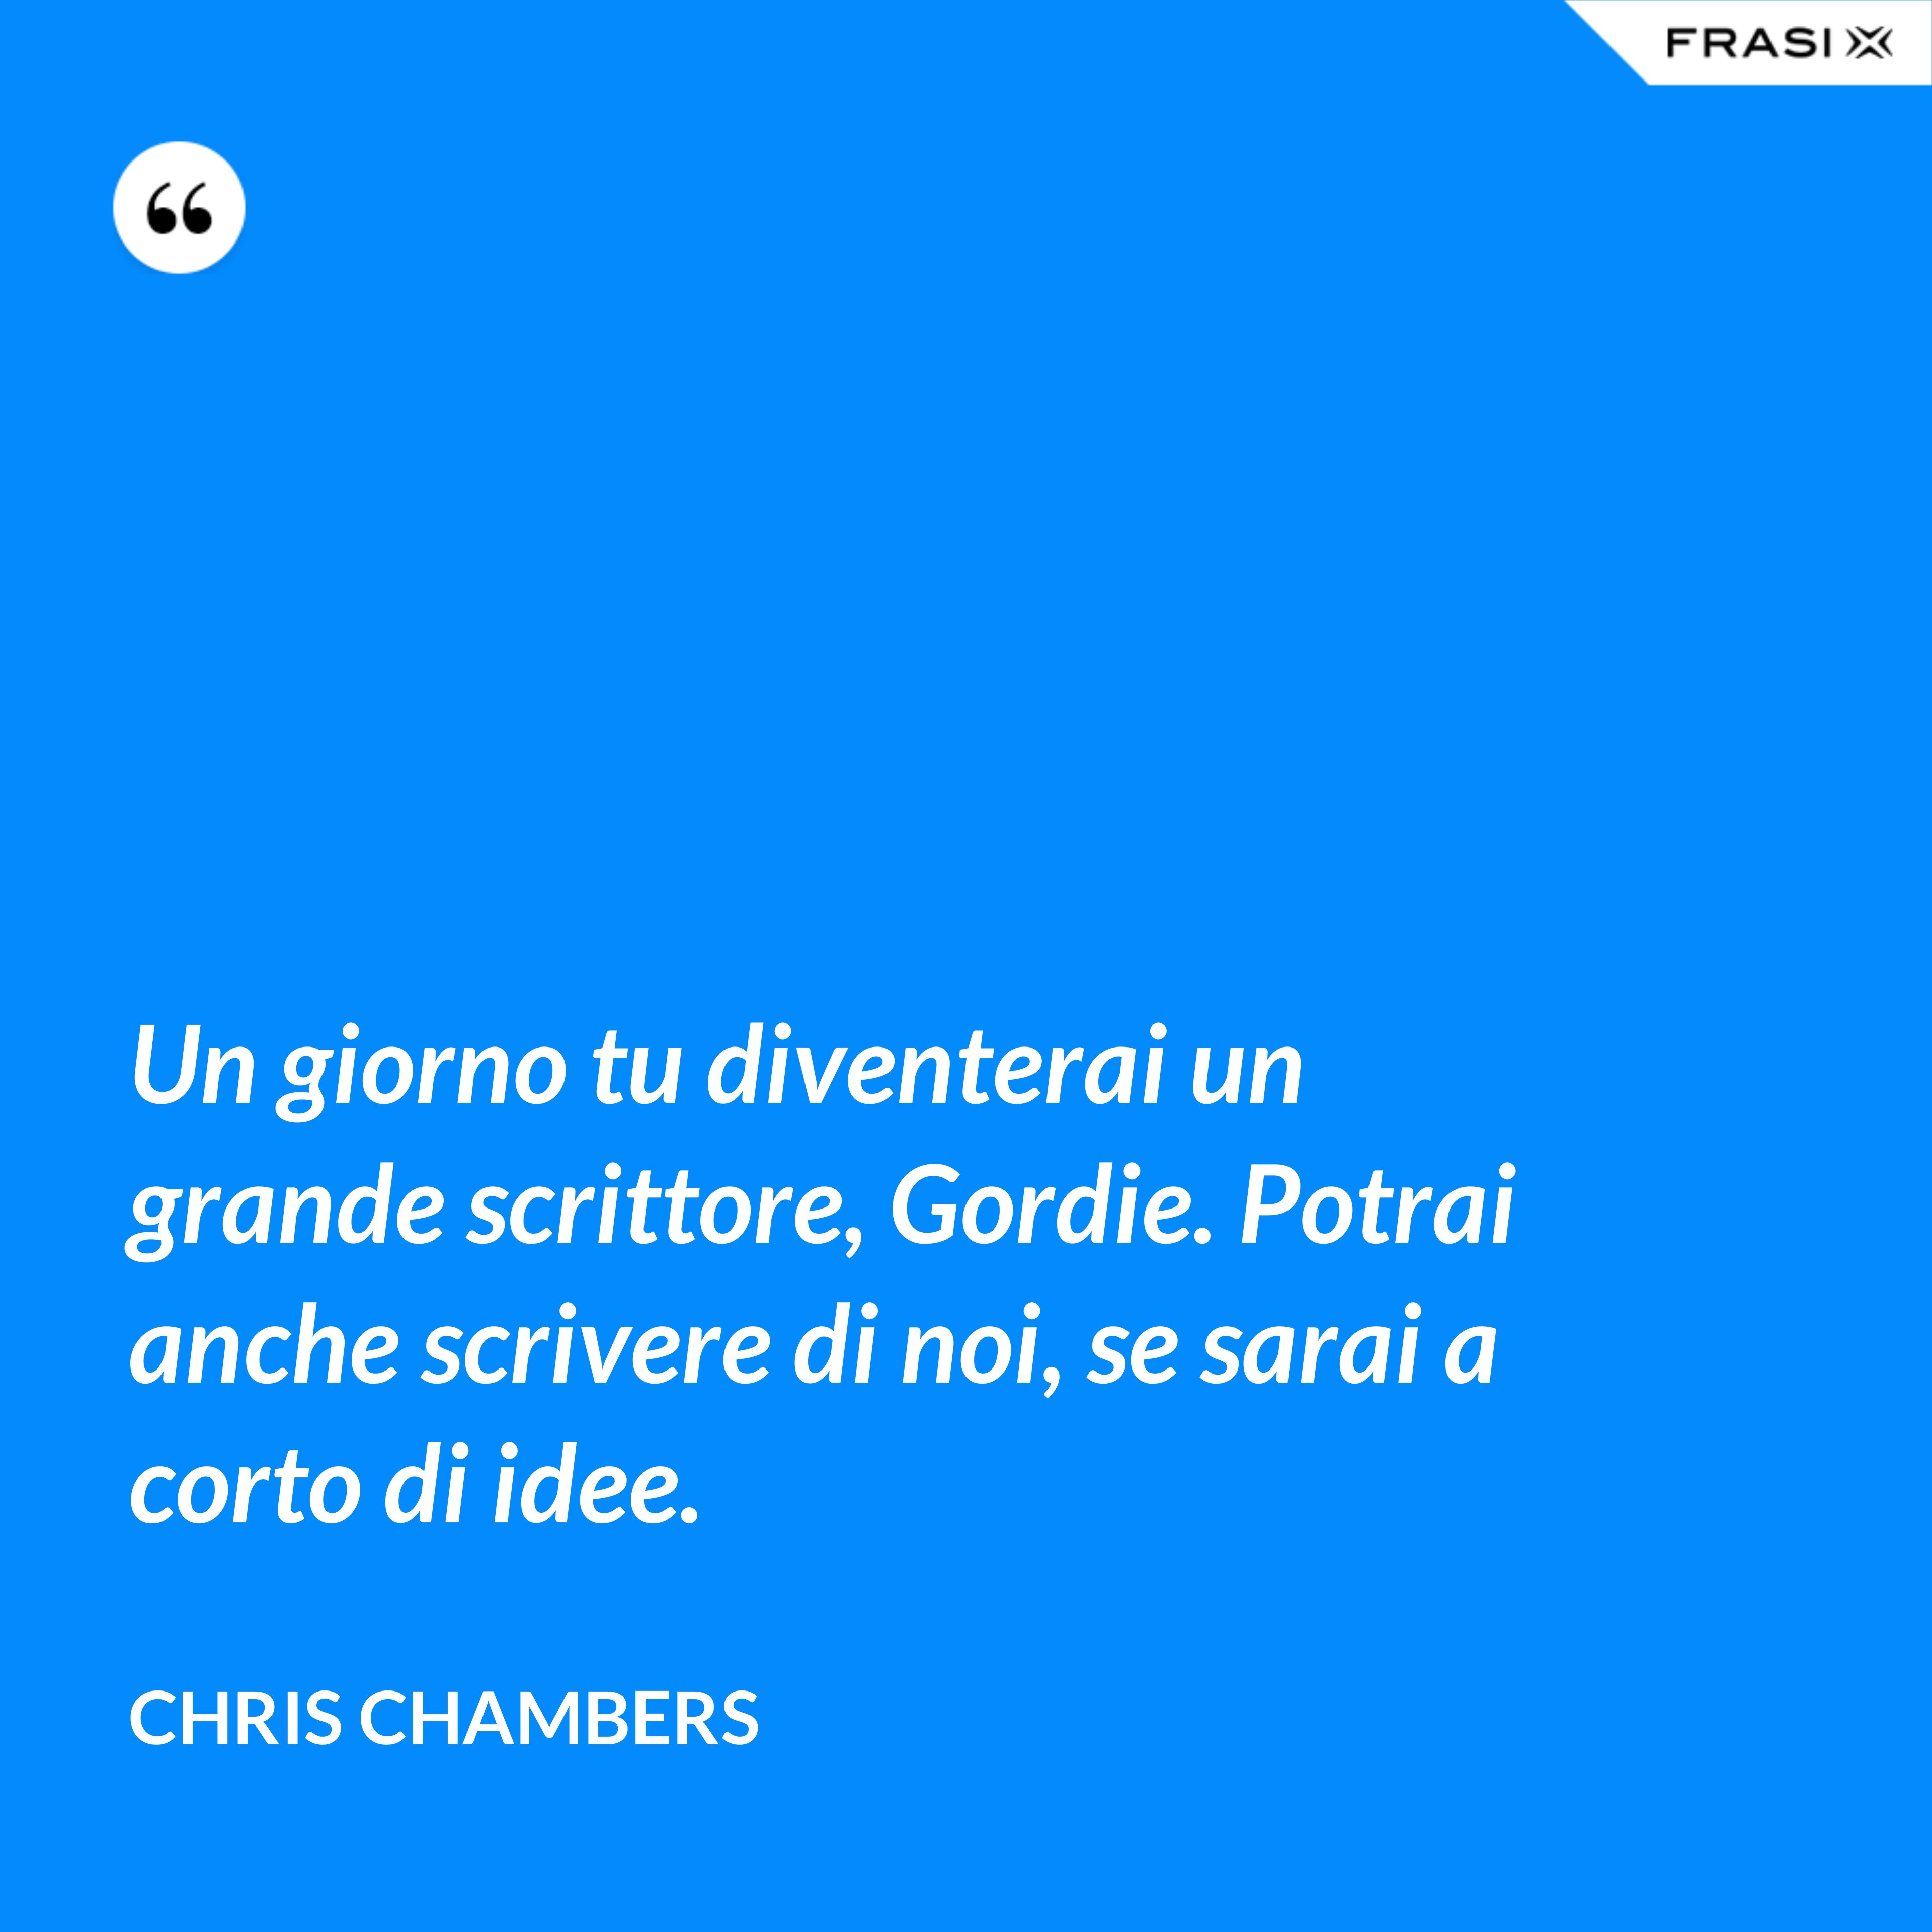 Un giorno tu diventerai un grande scrittore, Gordie. Potrai anche scrivere di noi, se sarai a corto di idee. - Chris Chambers